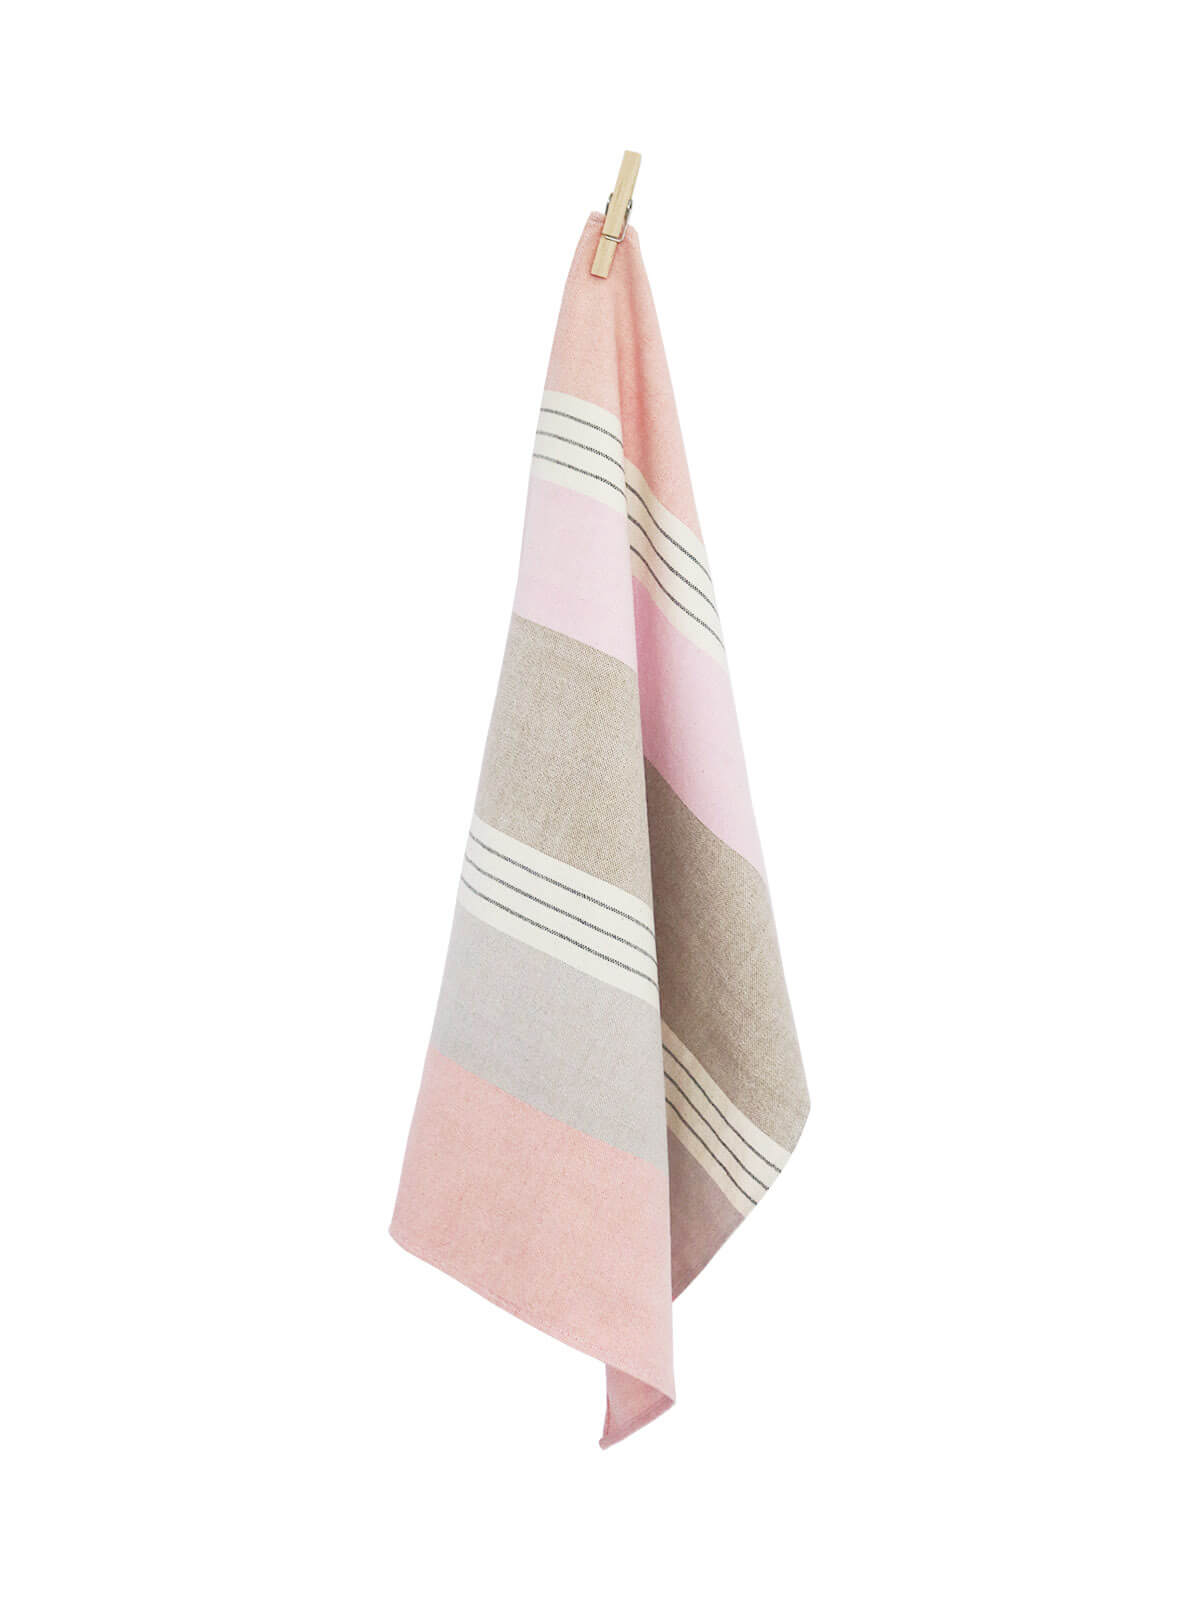 Malibu handwoven tea towel, Weavers, Mitzie Mee Shop